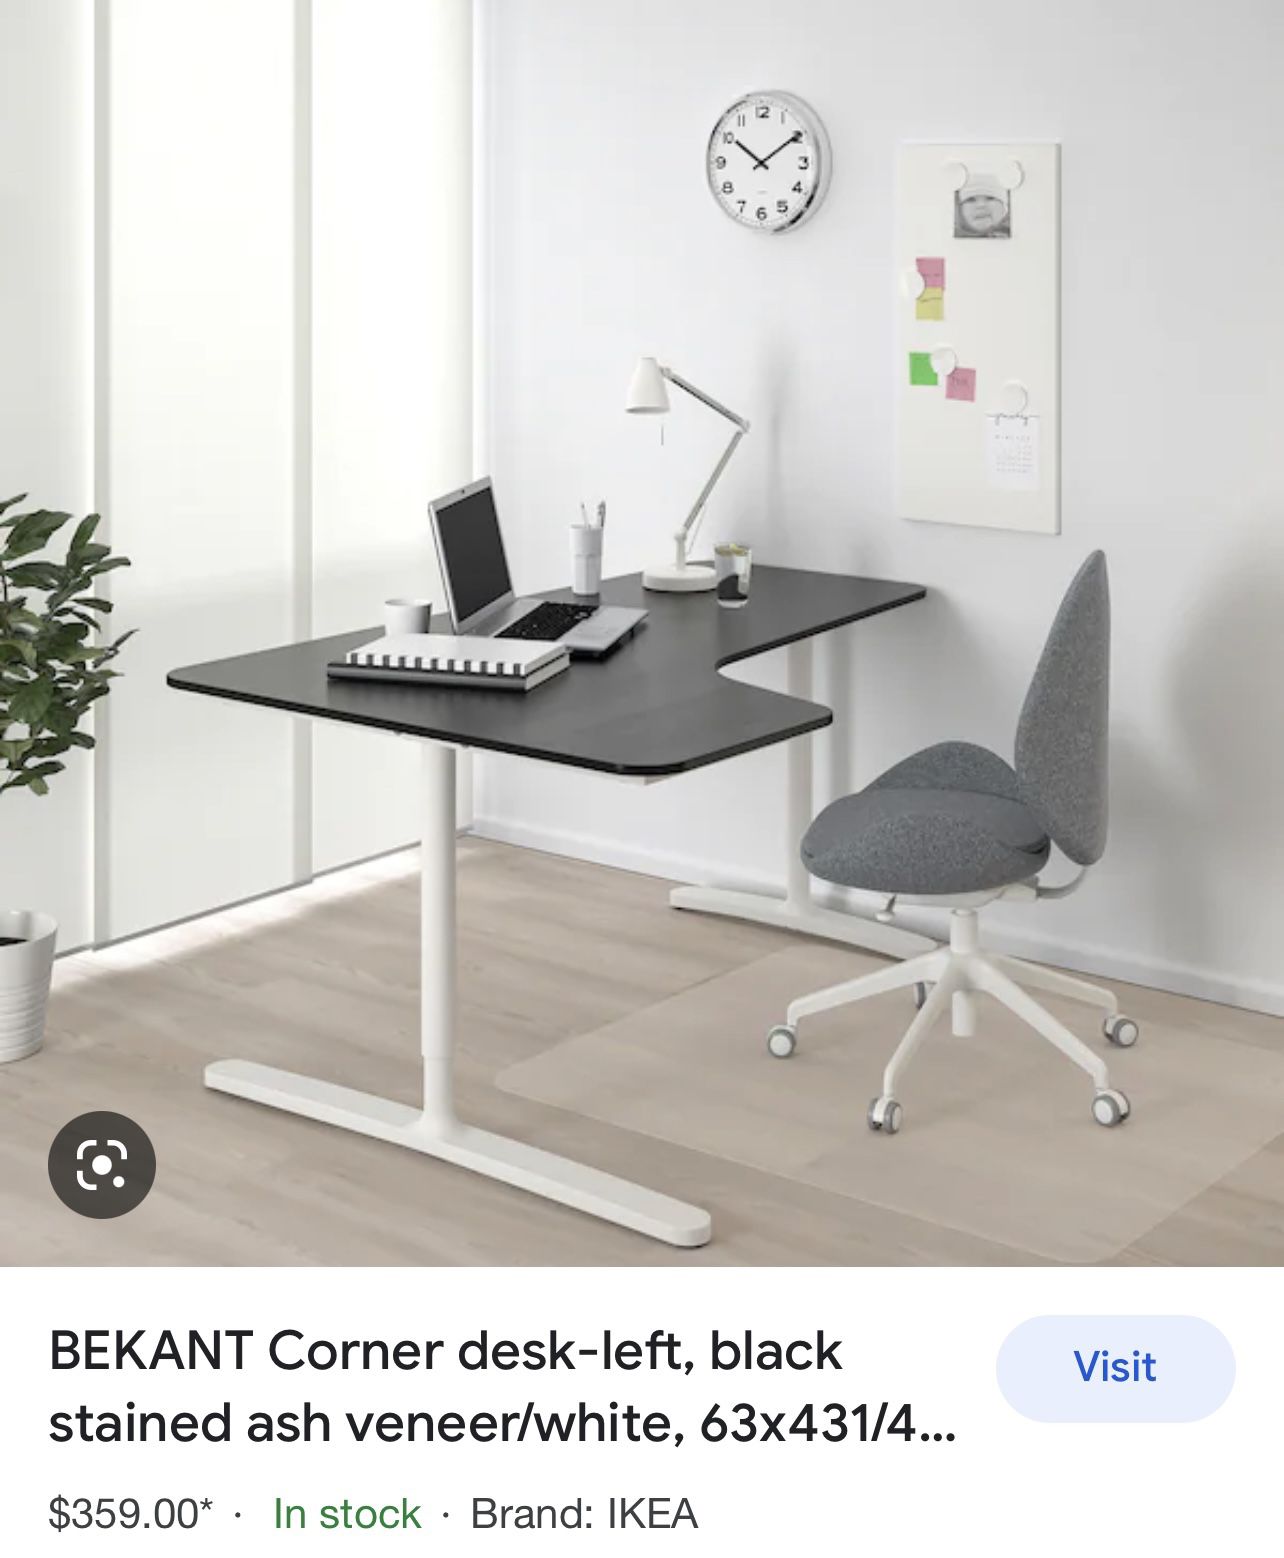 2  Ikea córner Desk. Brown And White (1 Desk-left And 1 Desk-right)